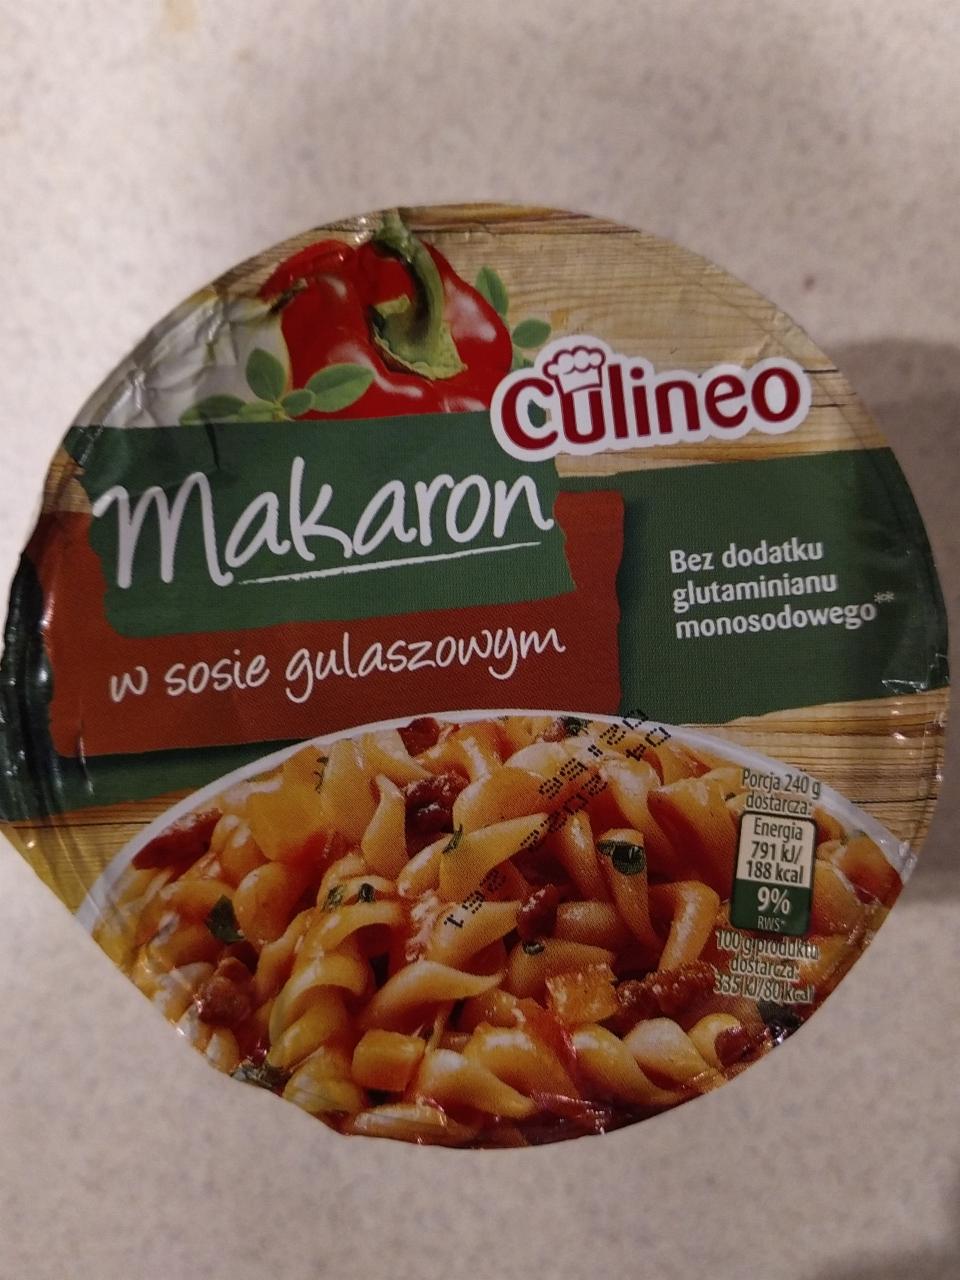 Zdjęcia - Makaron w sosie gulaszowym Culineo